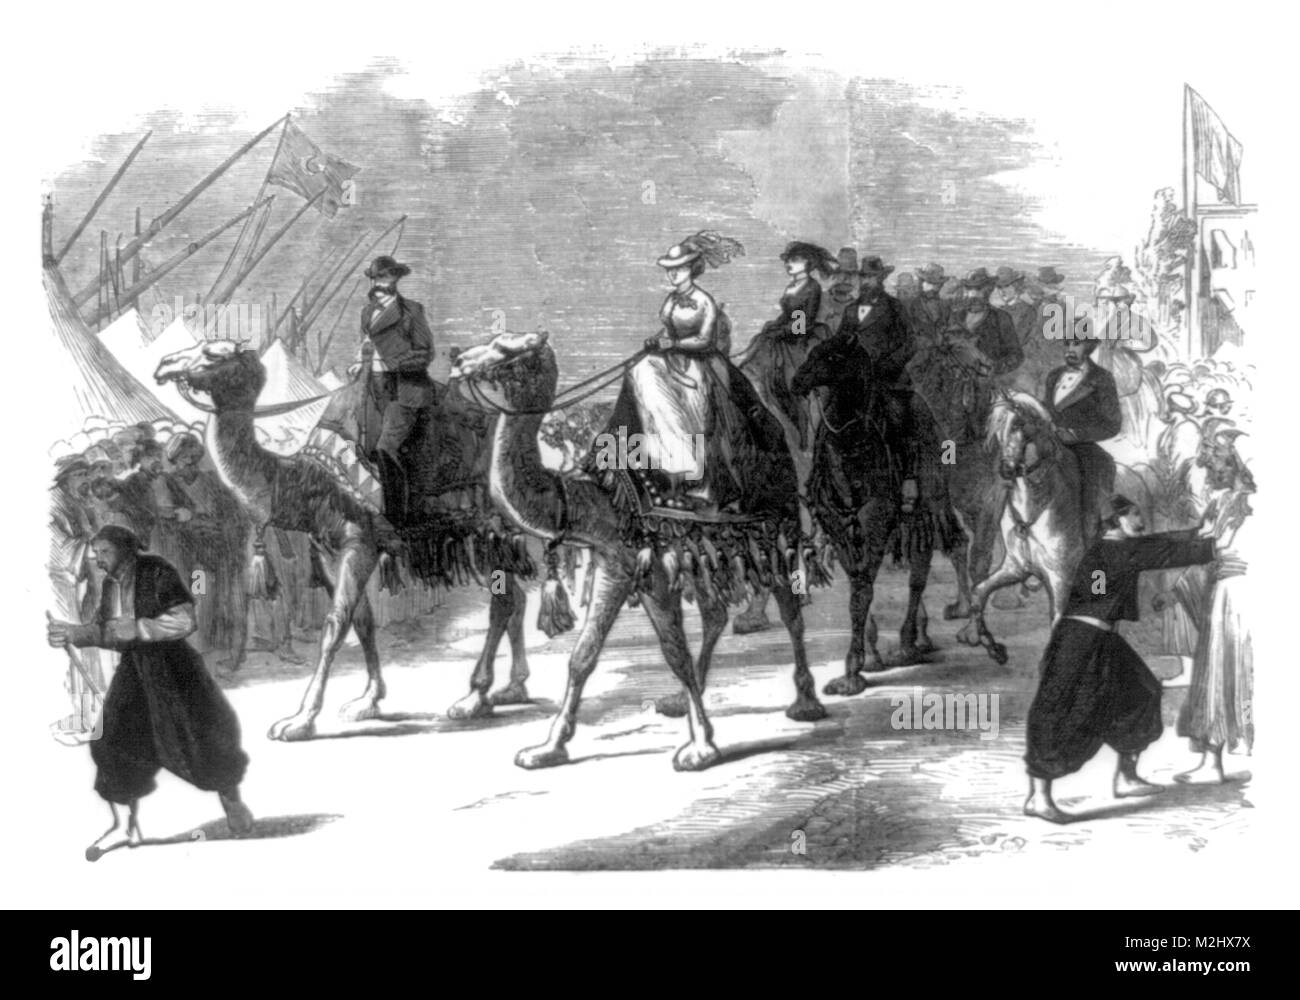 La apertura del Canal de Suez, la Emperatriz Eugenia, 1869 Foto de stock